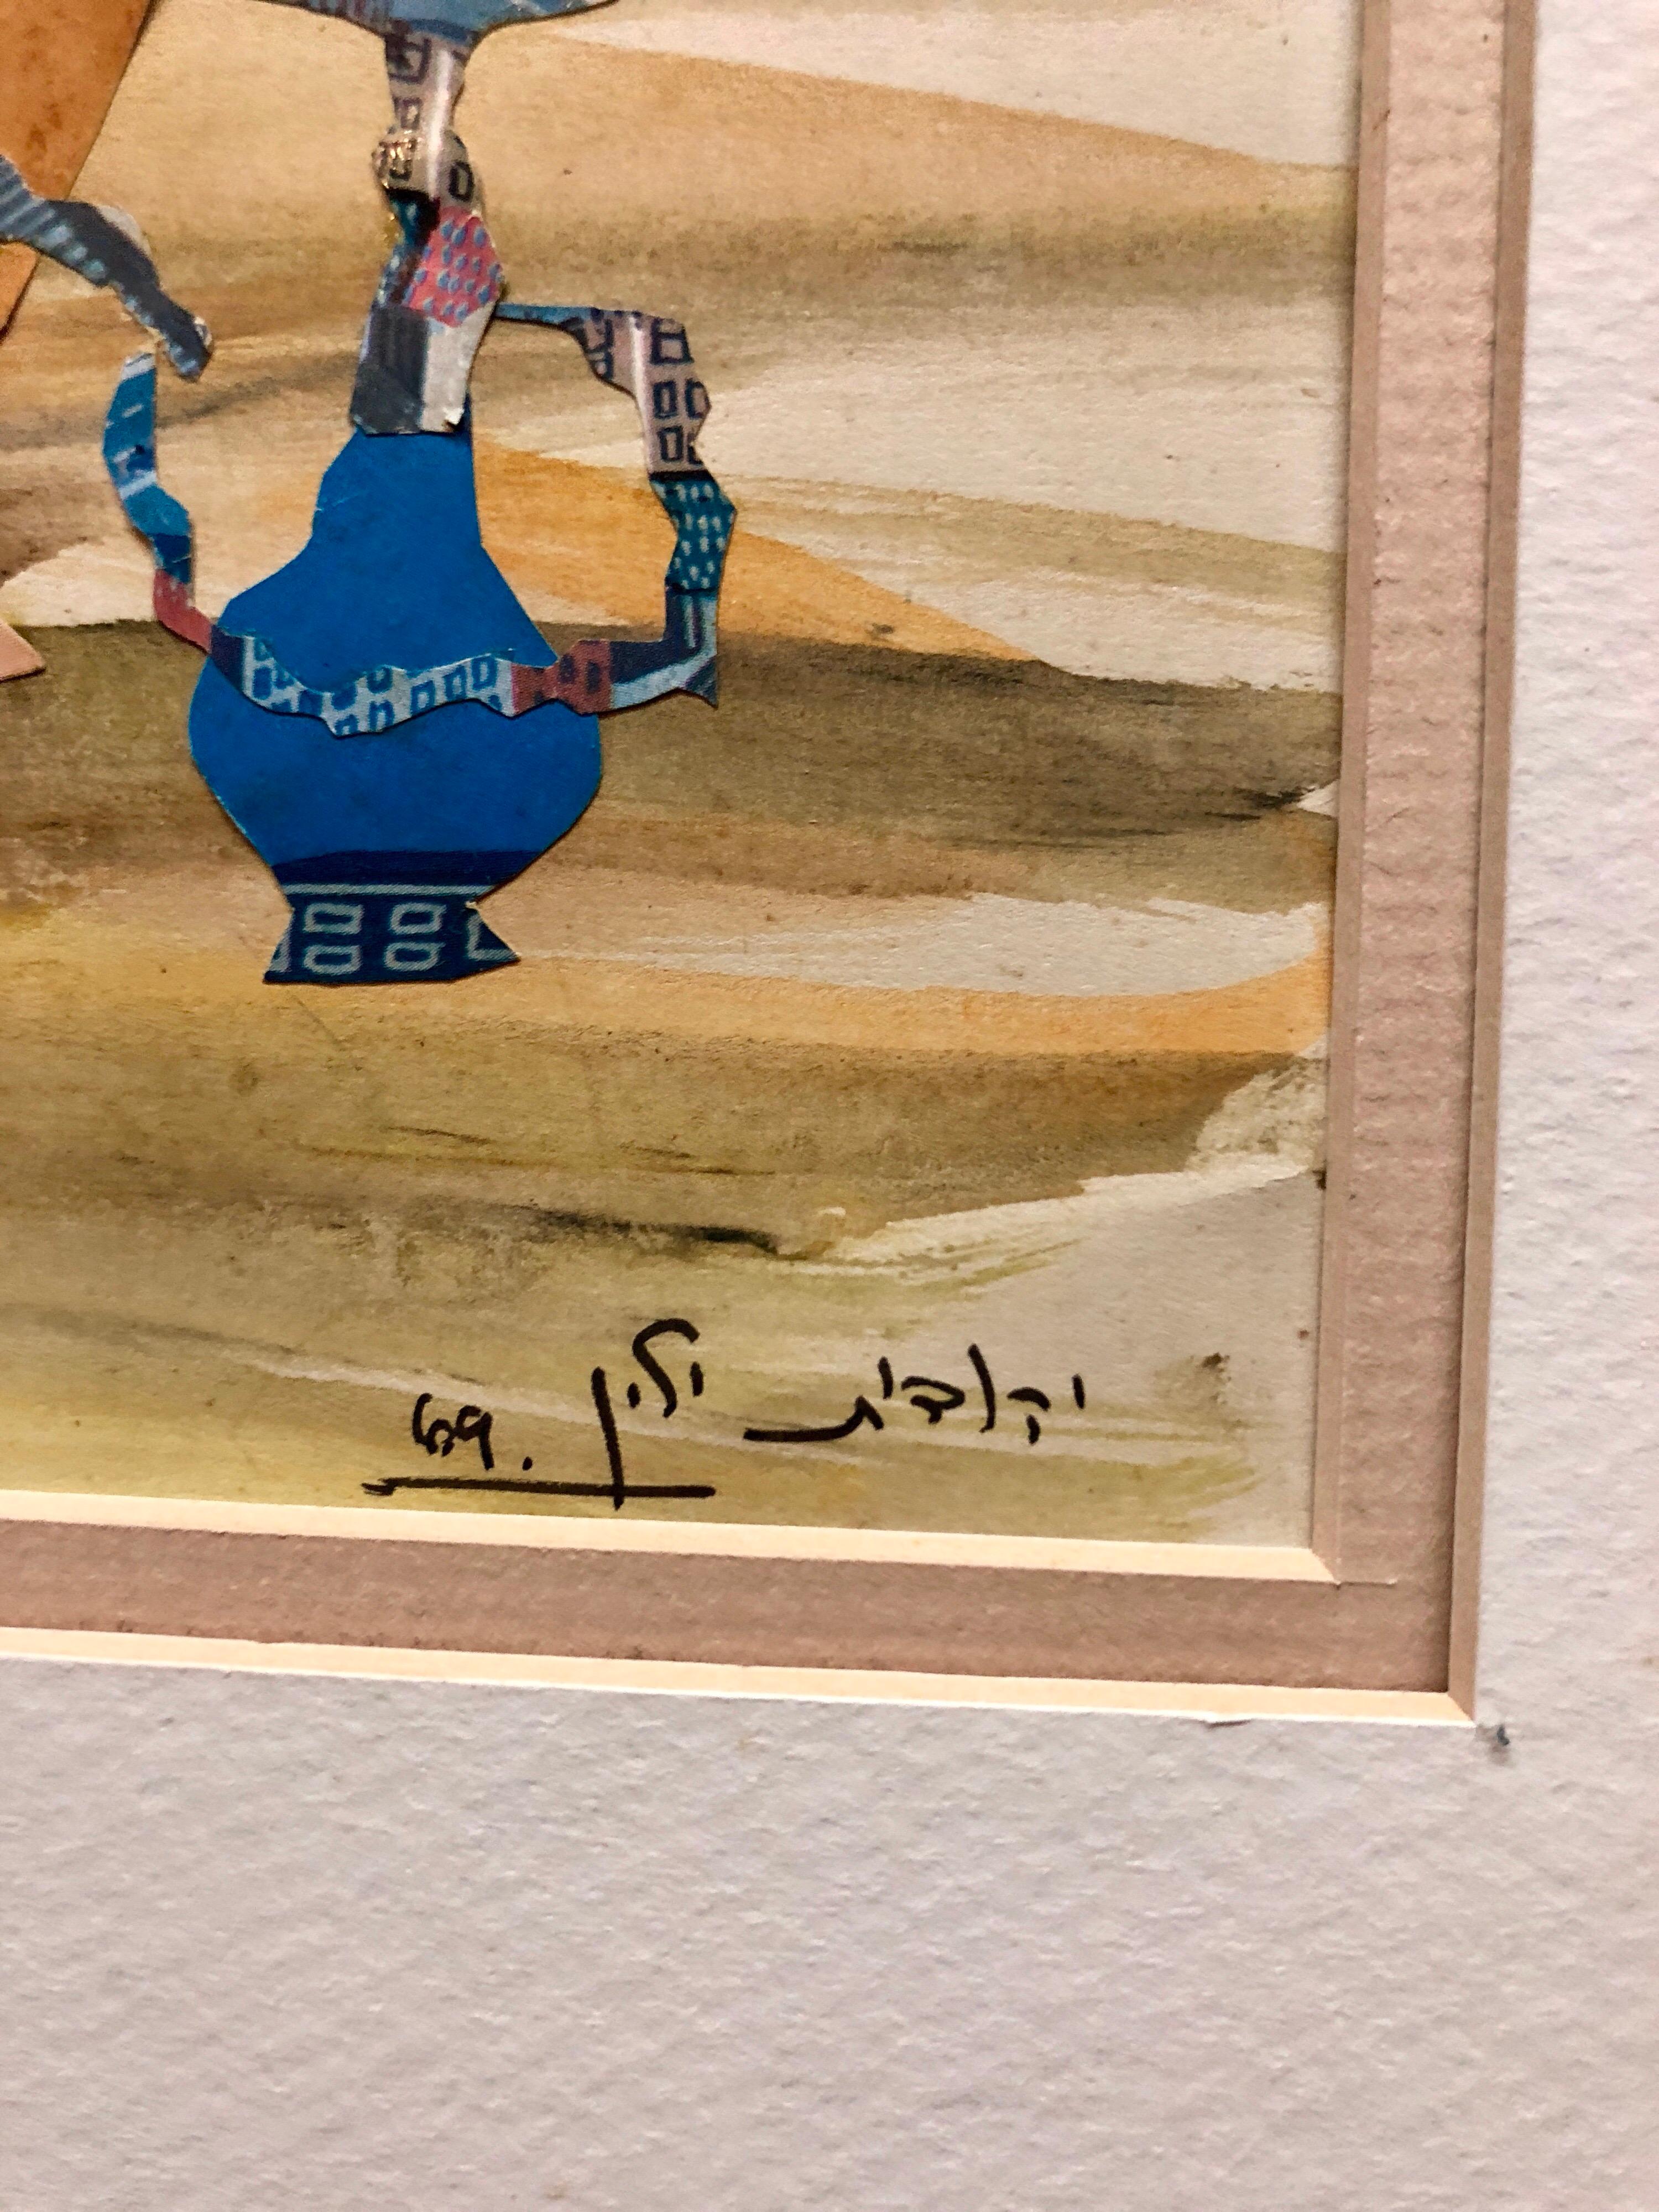 Judith Yellin Ginat  ist einer der bekanntesten Künstler, die heute in Israel arbeiten. Sie wurde in Jerusalem geboren und ist Israelin der fünften Generation. Ihre Arbeiten haben etwas Naives, Volkskünstlerisches an sich.
1941-43 Absolvent der